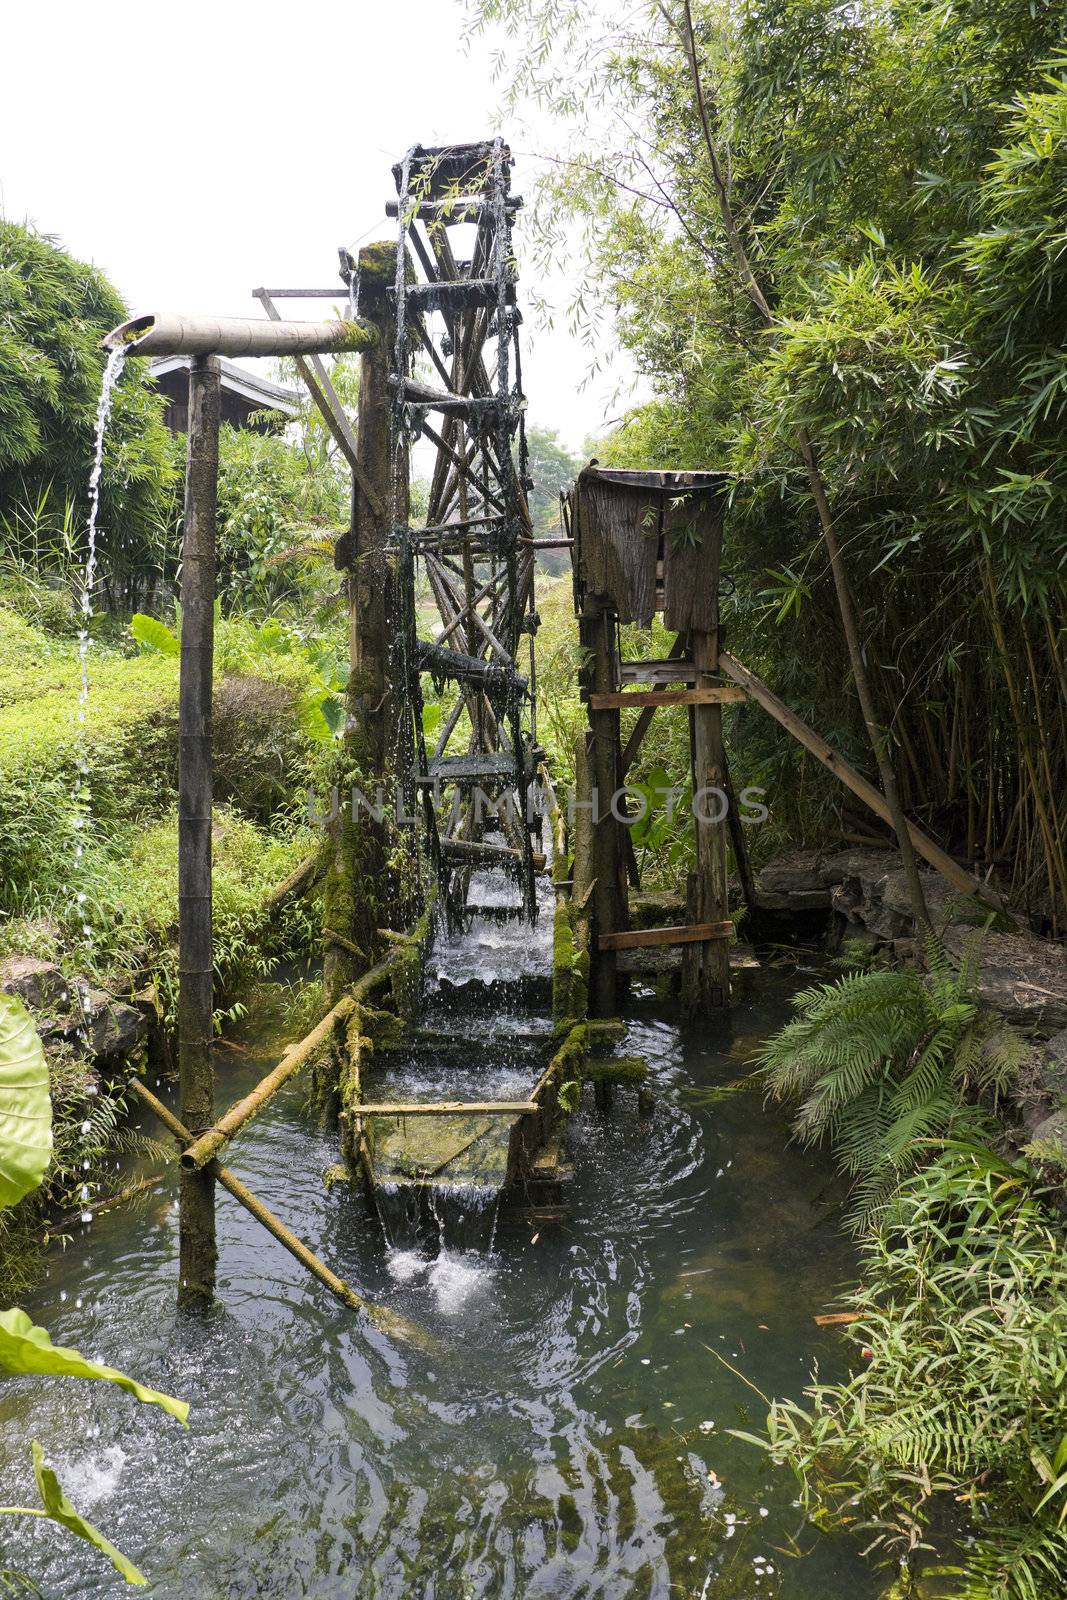 Image of a paddy farmer's water wheel irrigator at Guilin, China.